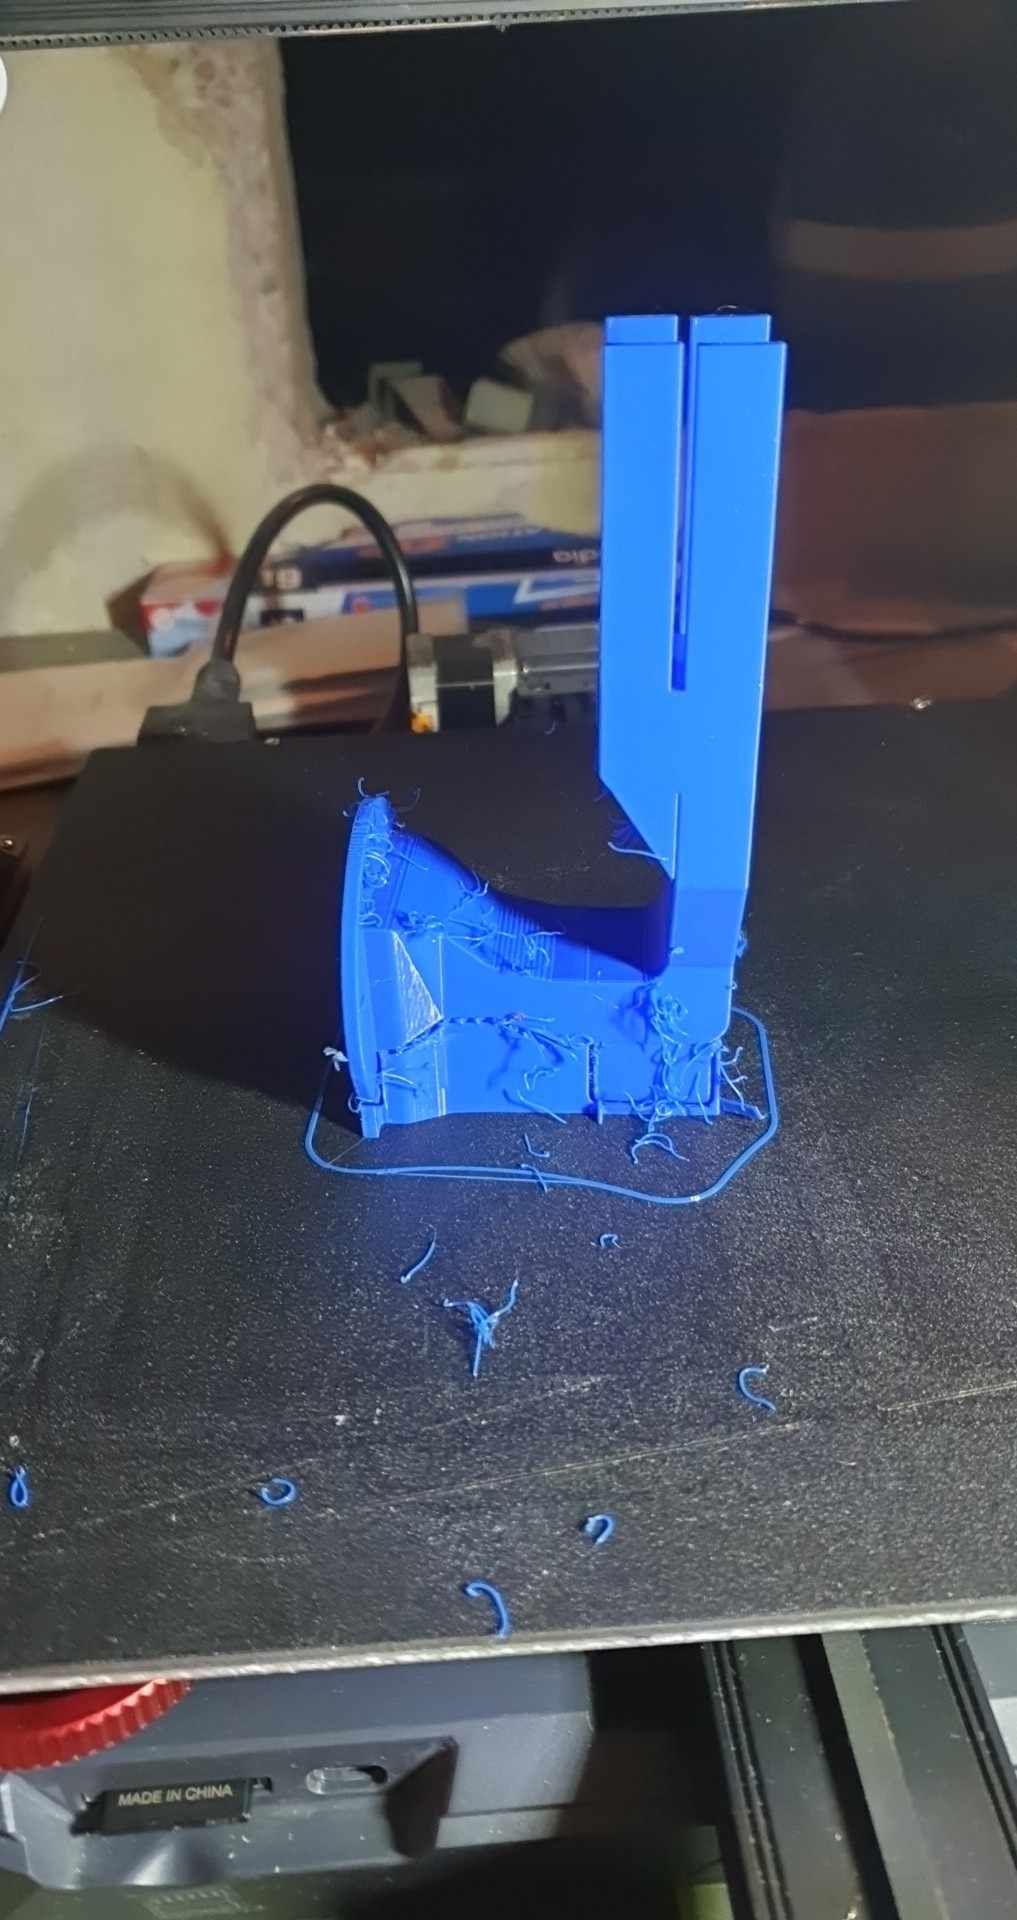 fabriquer un déshumidificateur de filaments .. c'est possible ? -  Discussion sur les imprimantes 3D - Forum pour les imprimantes 3D et  l'impression 3D